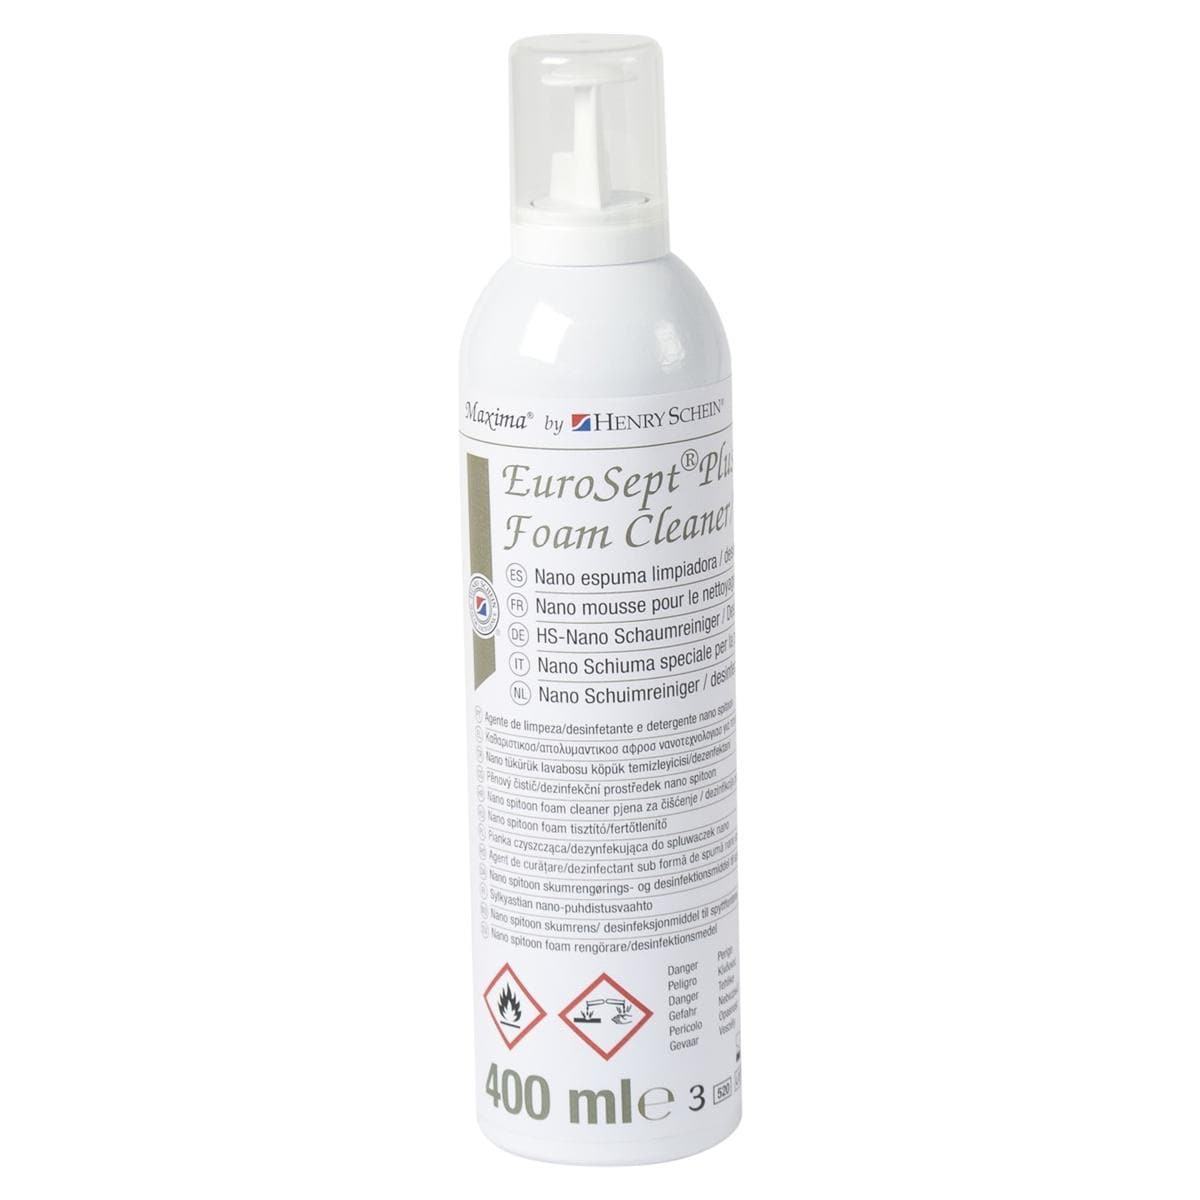 EuroSept Plus Nano Spittoon Foam Cleaner - Flacon, 400 ml